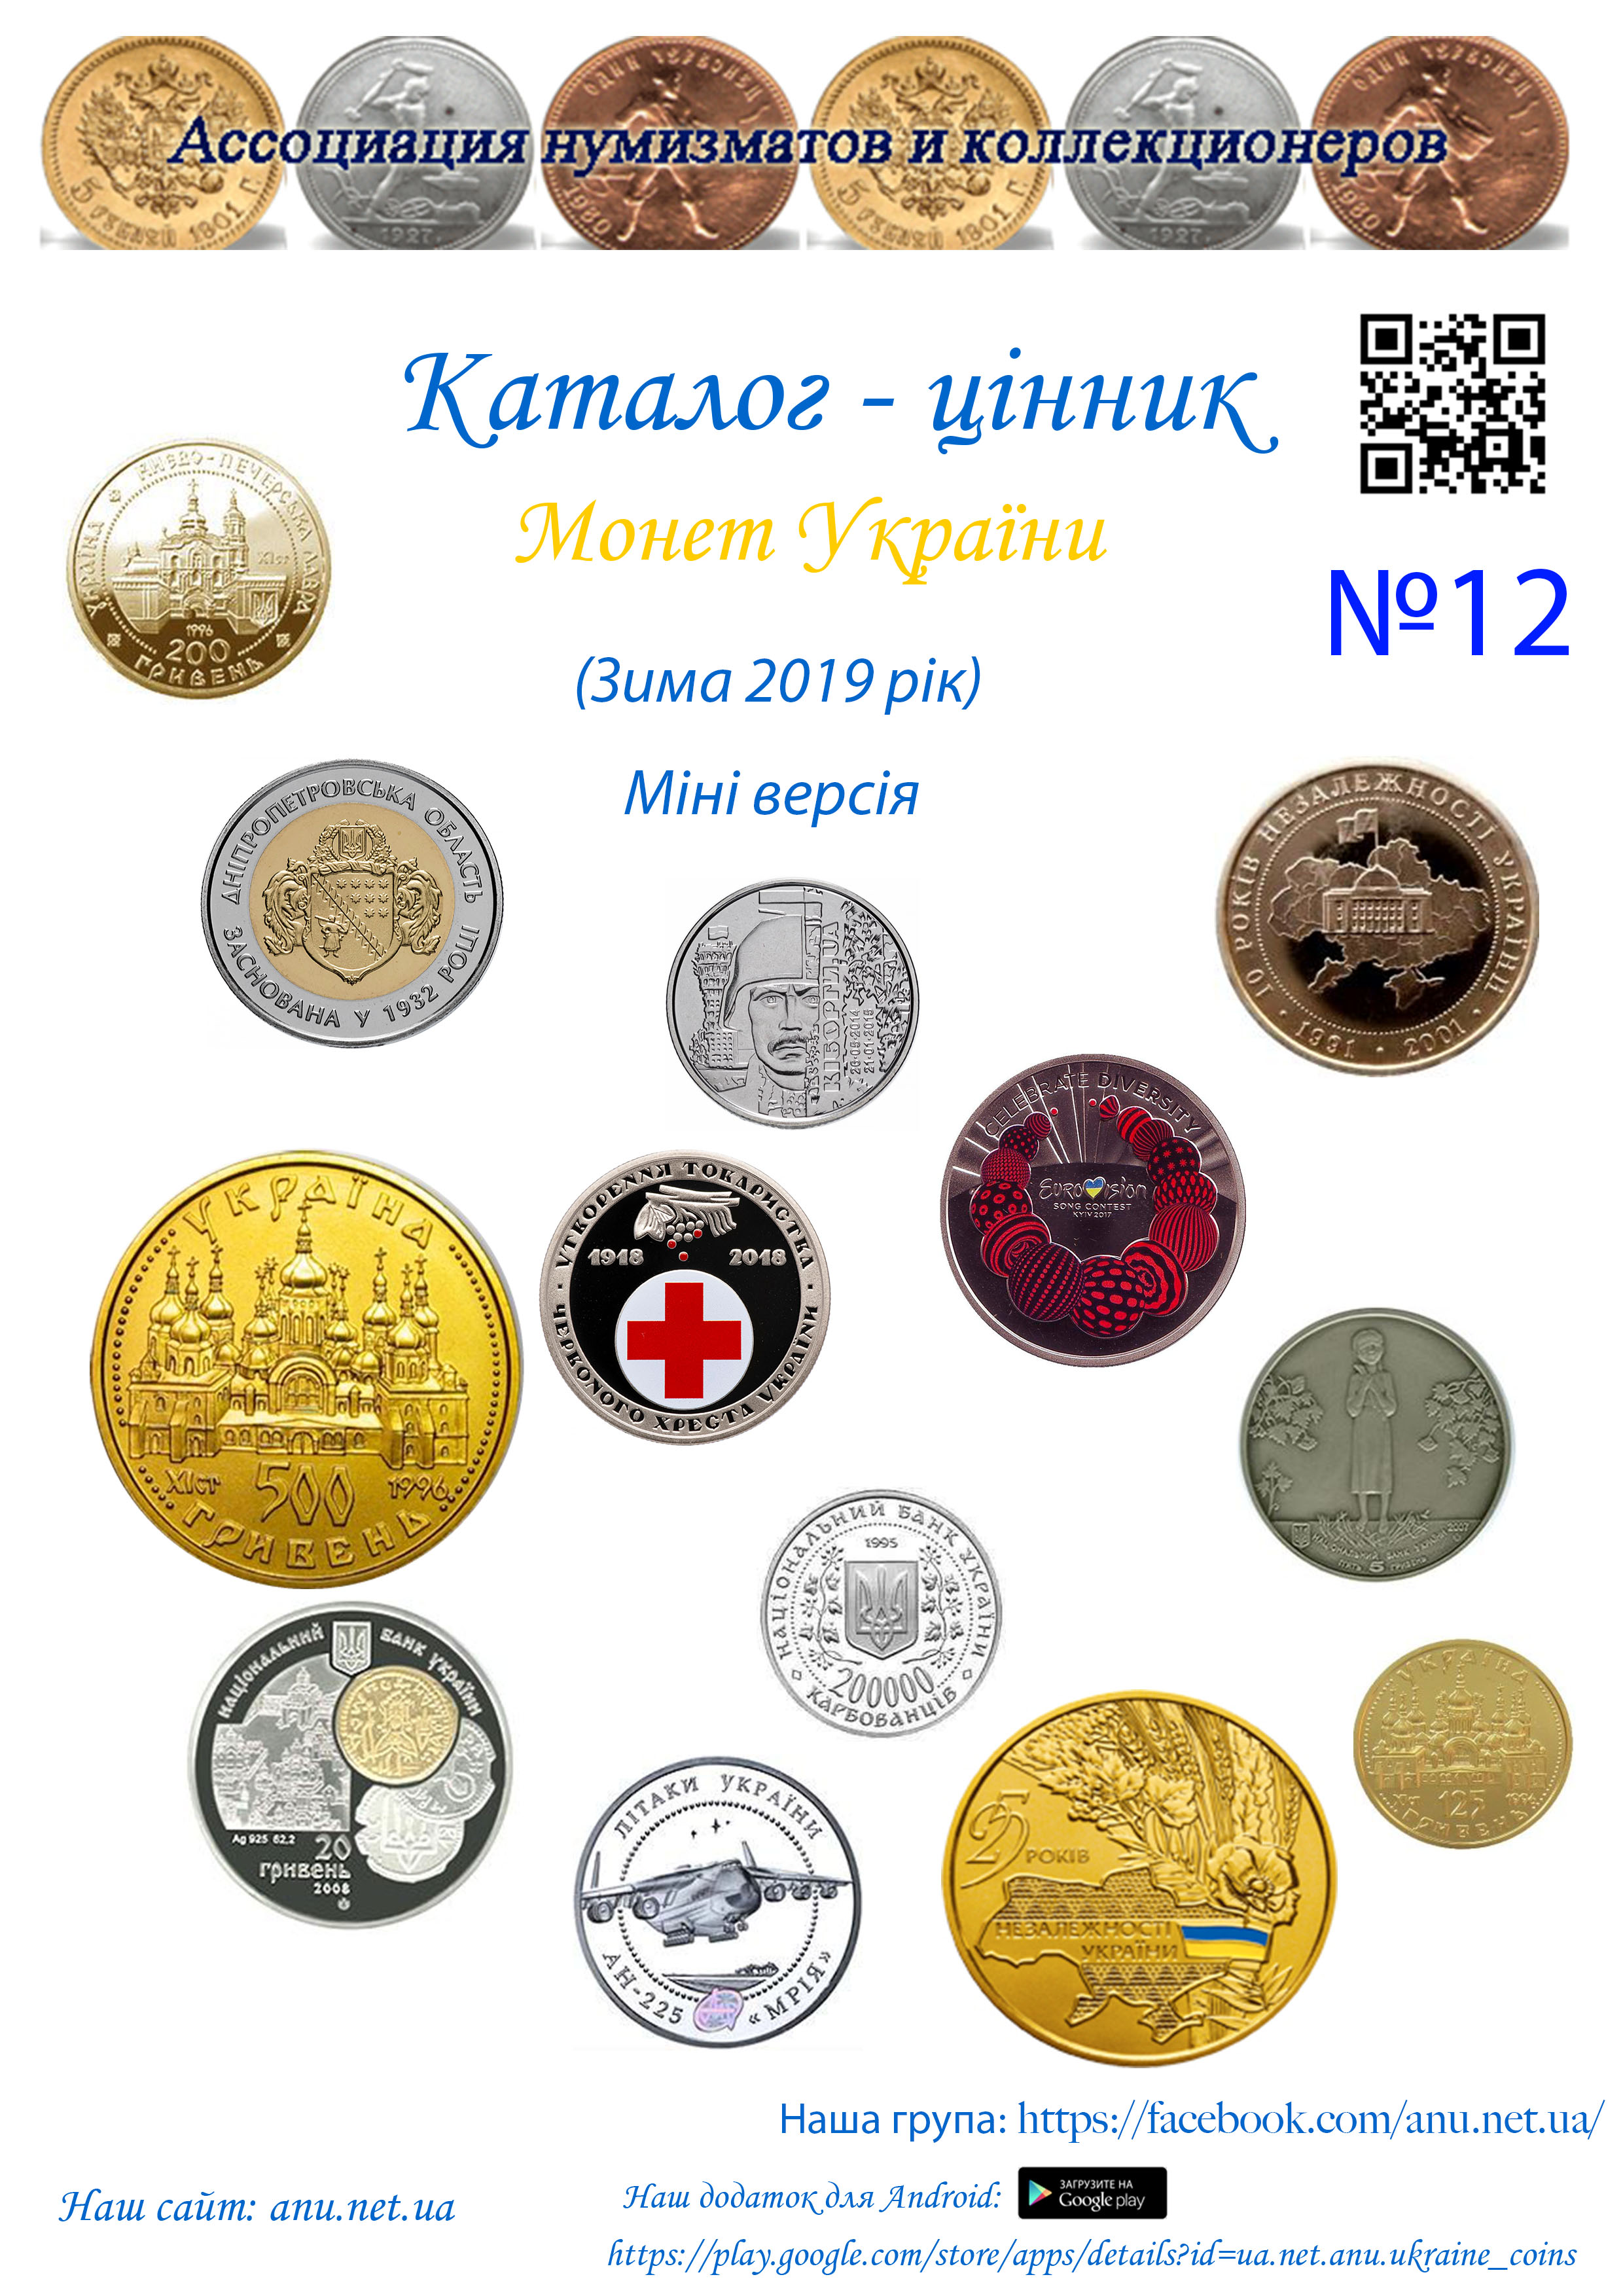 Version_12 АНиКУ (Ассоциация нумизматов и коллекционеров)